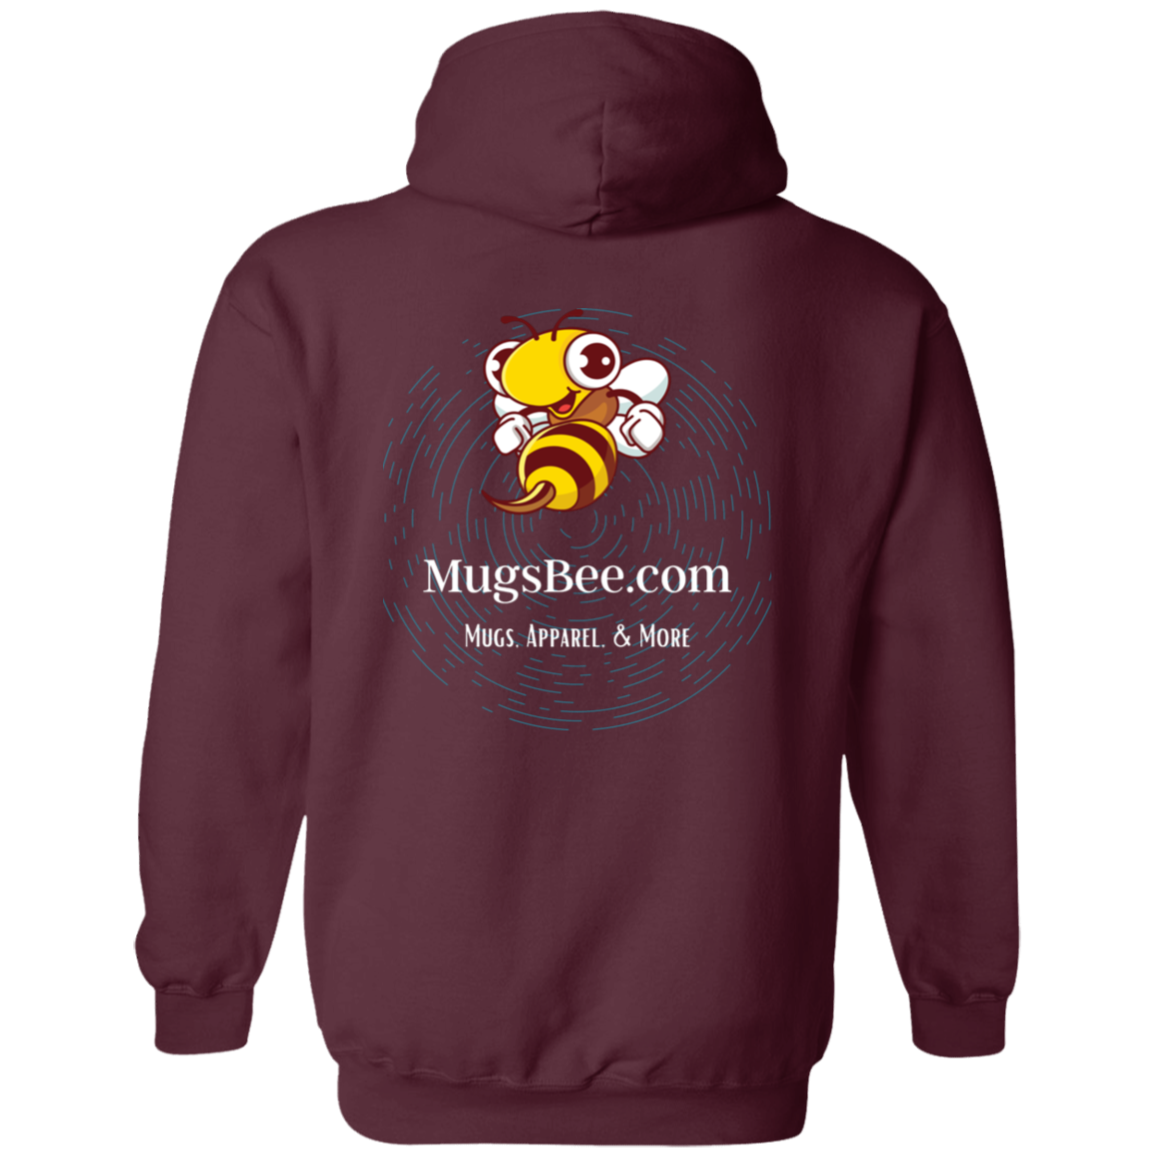 MugsBee.com Promo Unisex Hoodie